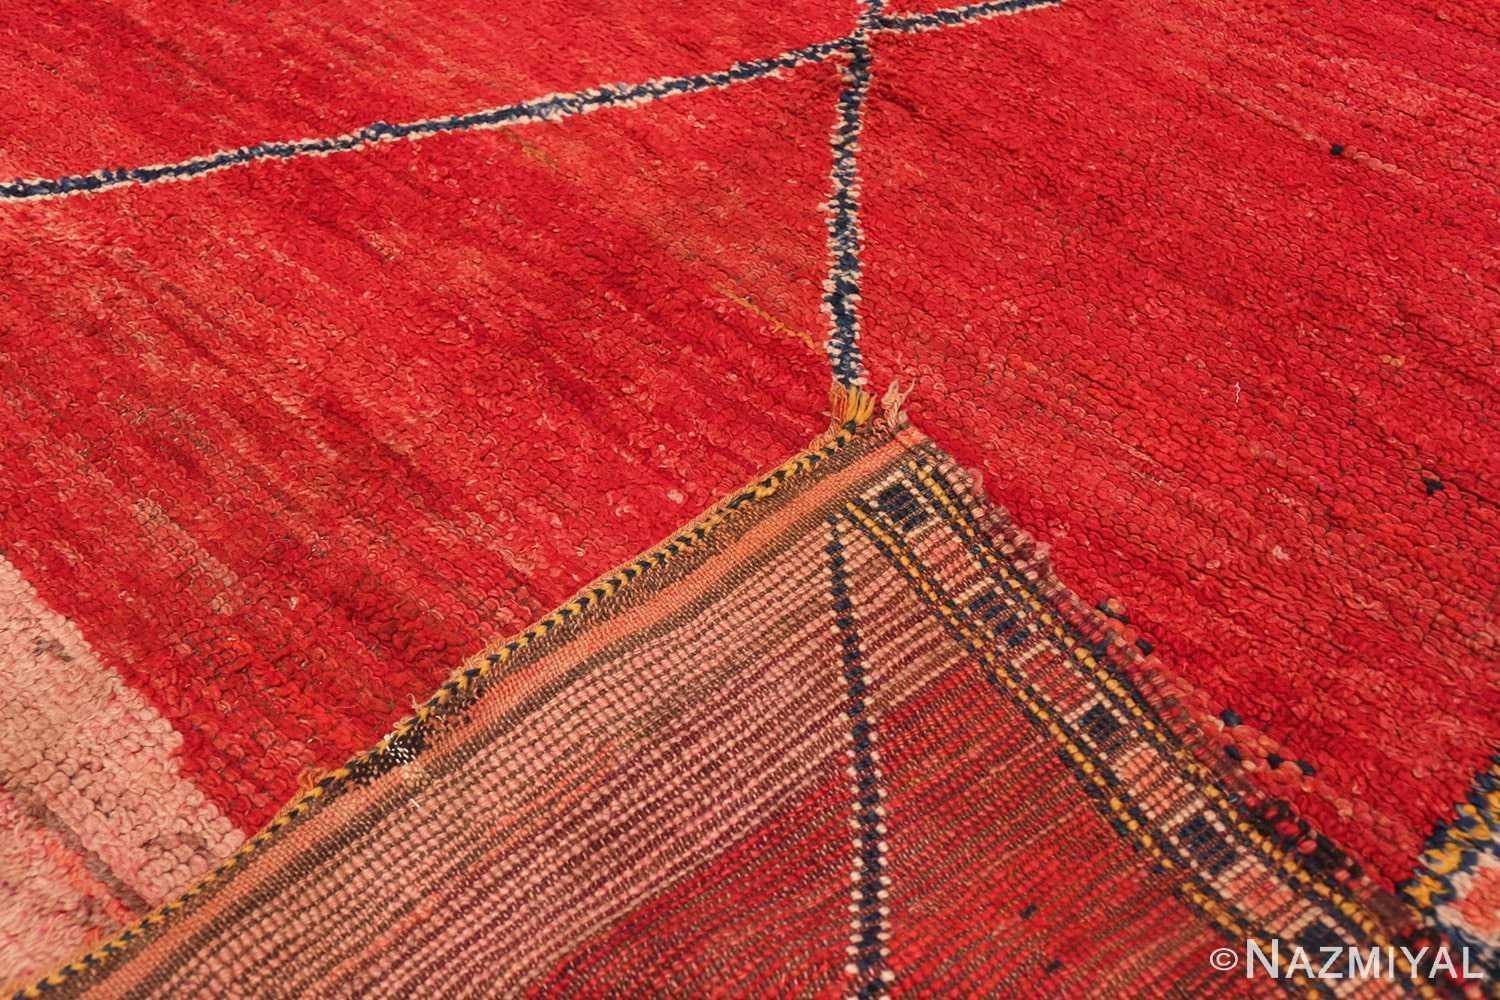 Un tapis marocain vintage magnifiquement artistique et rustique, Pays d'origine / Type de tapis : Tapis du Maroc, Circa Date : Vintage / Milieu du 20ème siècle. Dimensions : 1,73 m x 3,66 m (5 ft 8 in x 12 ft)

